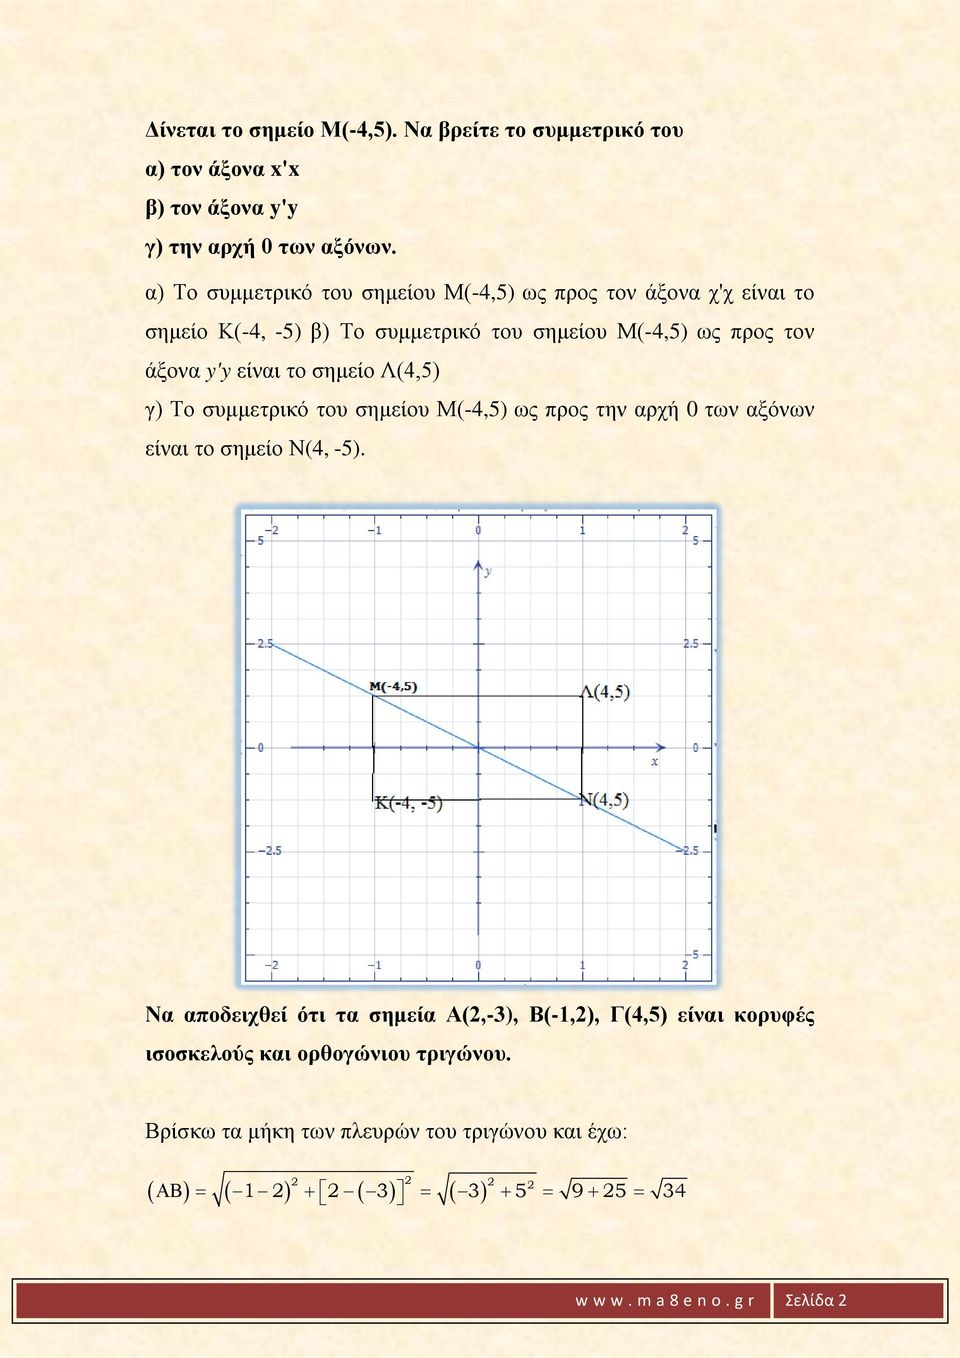 είναι το σημείο Λ(4,5) γ) Το συμμετρικό του σημείου Μ(-4,5) ως προς την αρχή 0 των αξόνων είναι το σημείο Ν(4, -5).